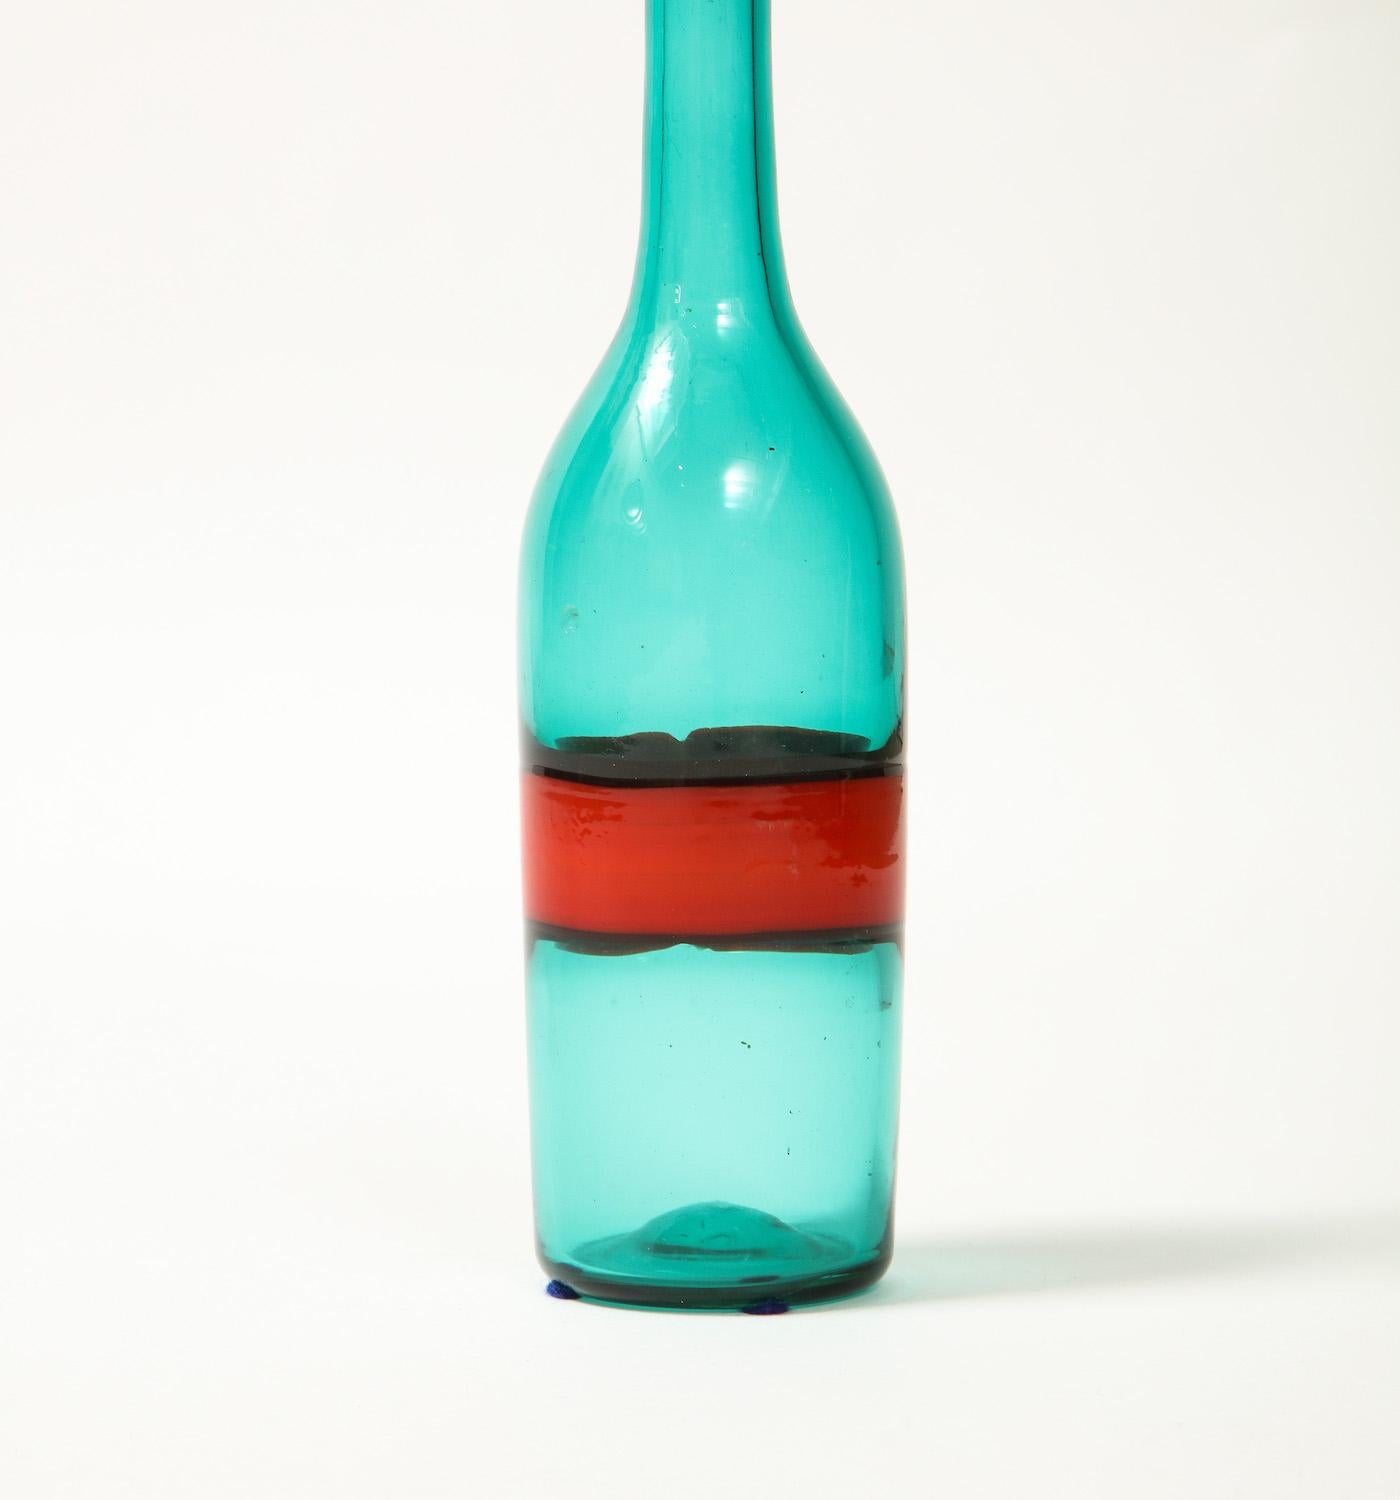 Carafe en verre incalmo soufflé à la main, rouge et vert, avec bouchon. Non signée. La partie supérieure de la bouteille semble avoir été soigneusement meulée à un moment donné. Provenance : Collectional, Berkeley, CA.